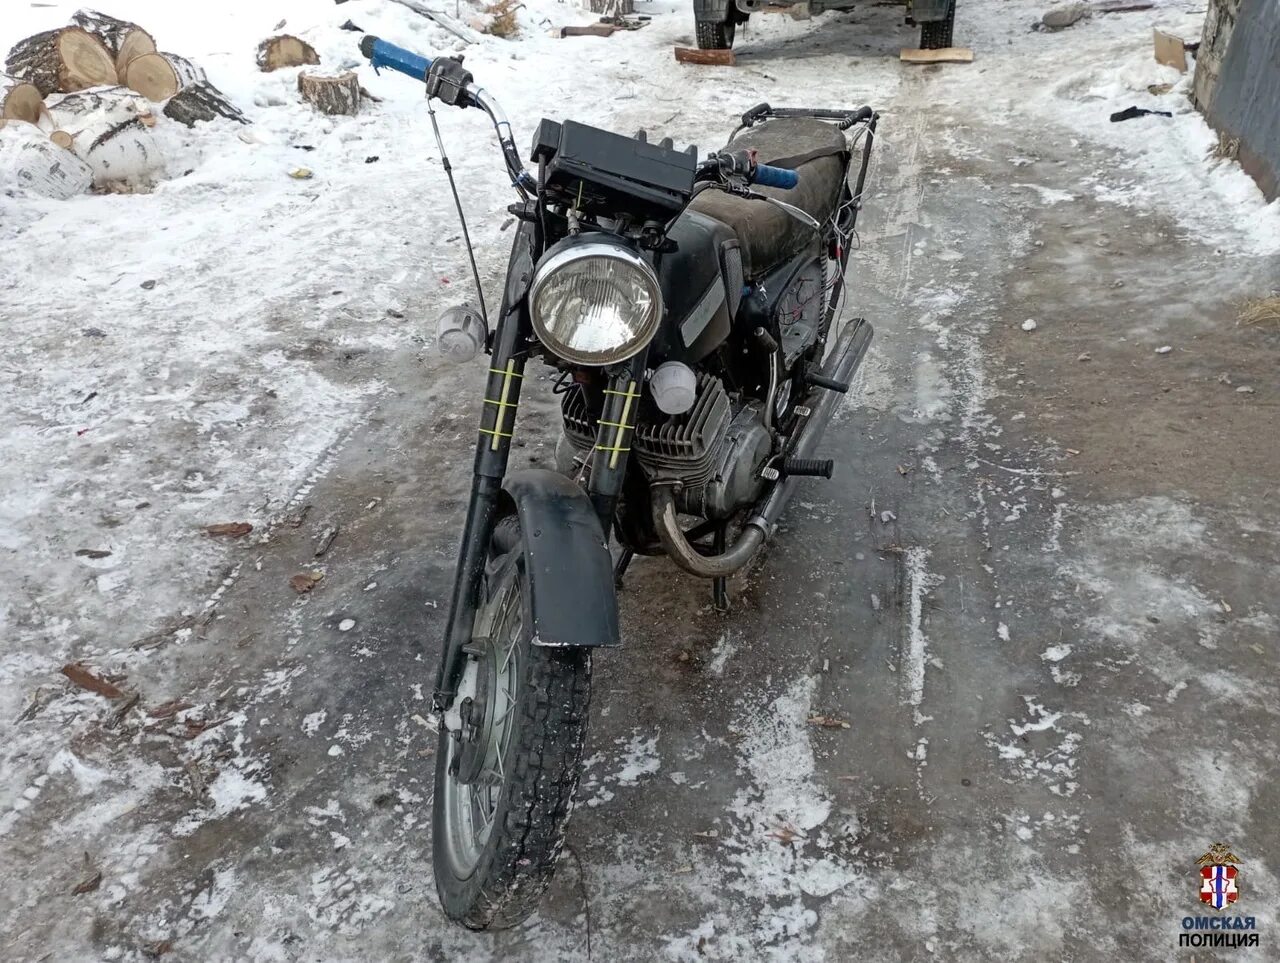 Купить мотоцикл в омской области